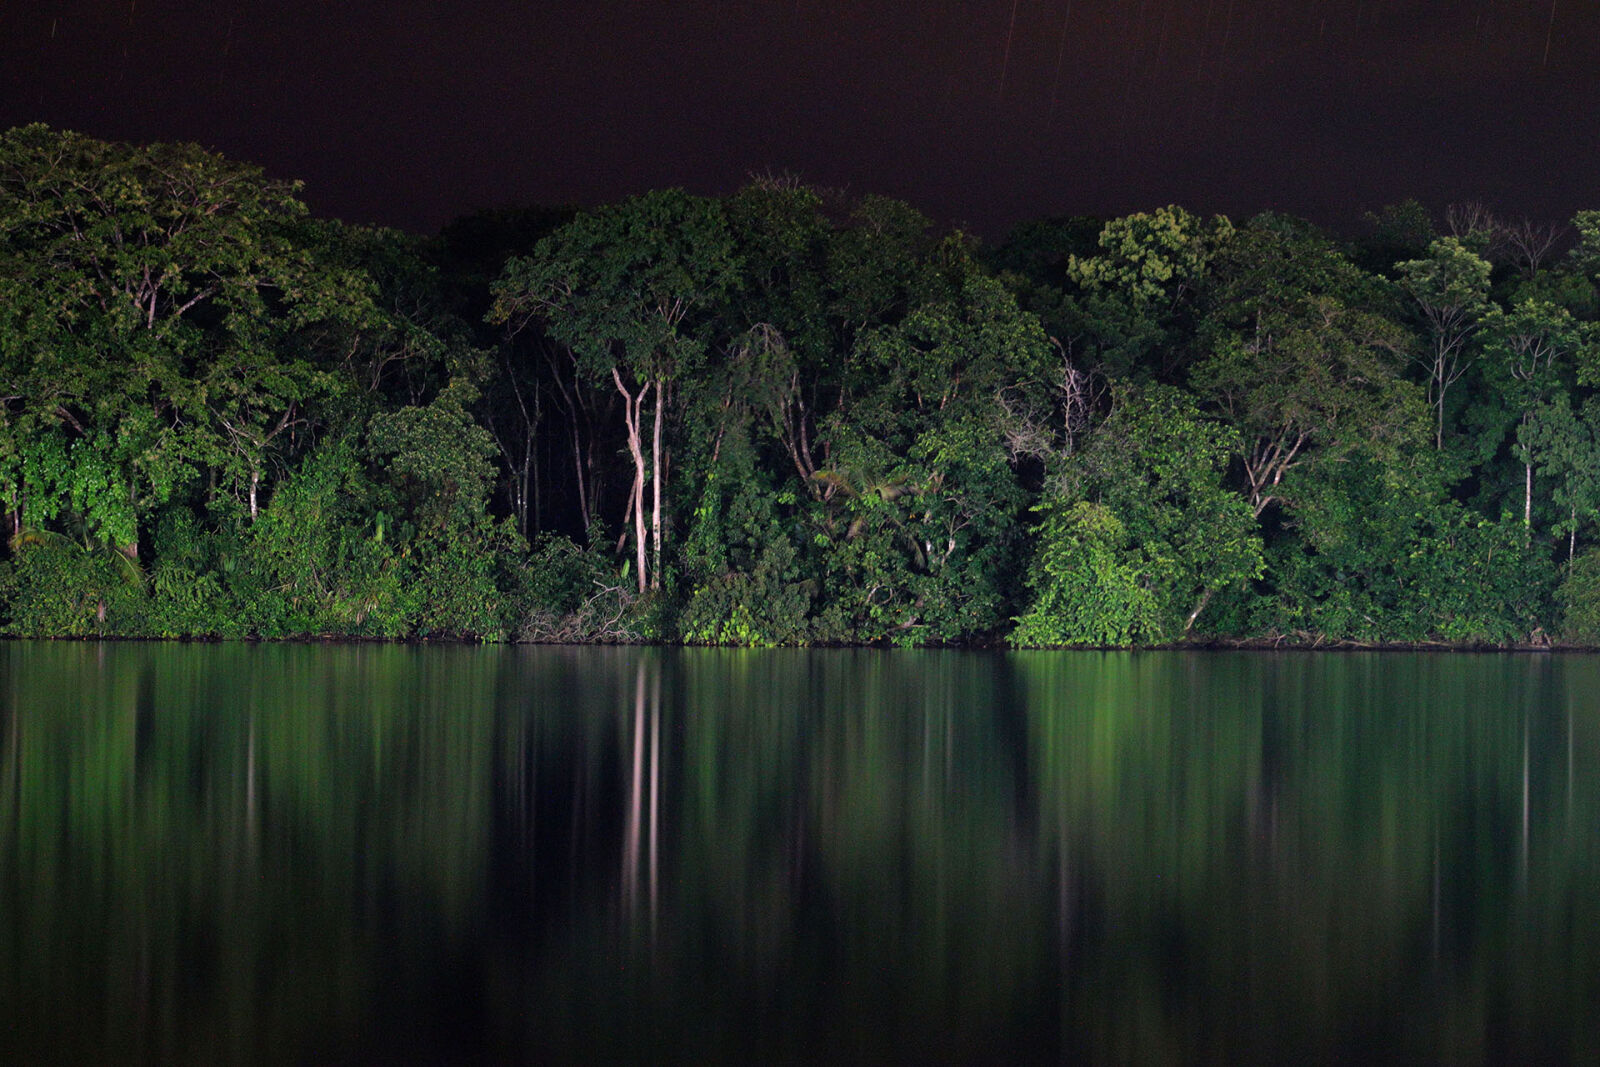 Canon EOS 80D sample photo. Caribbean, costa, rica, mangrove photography